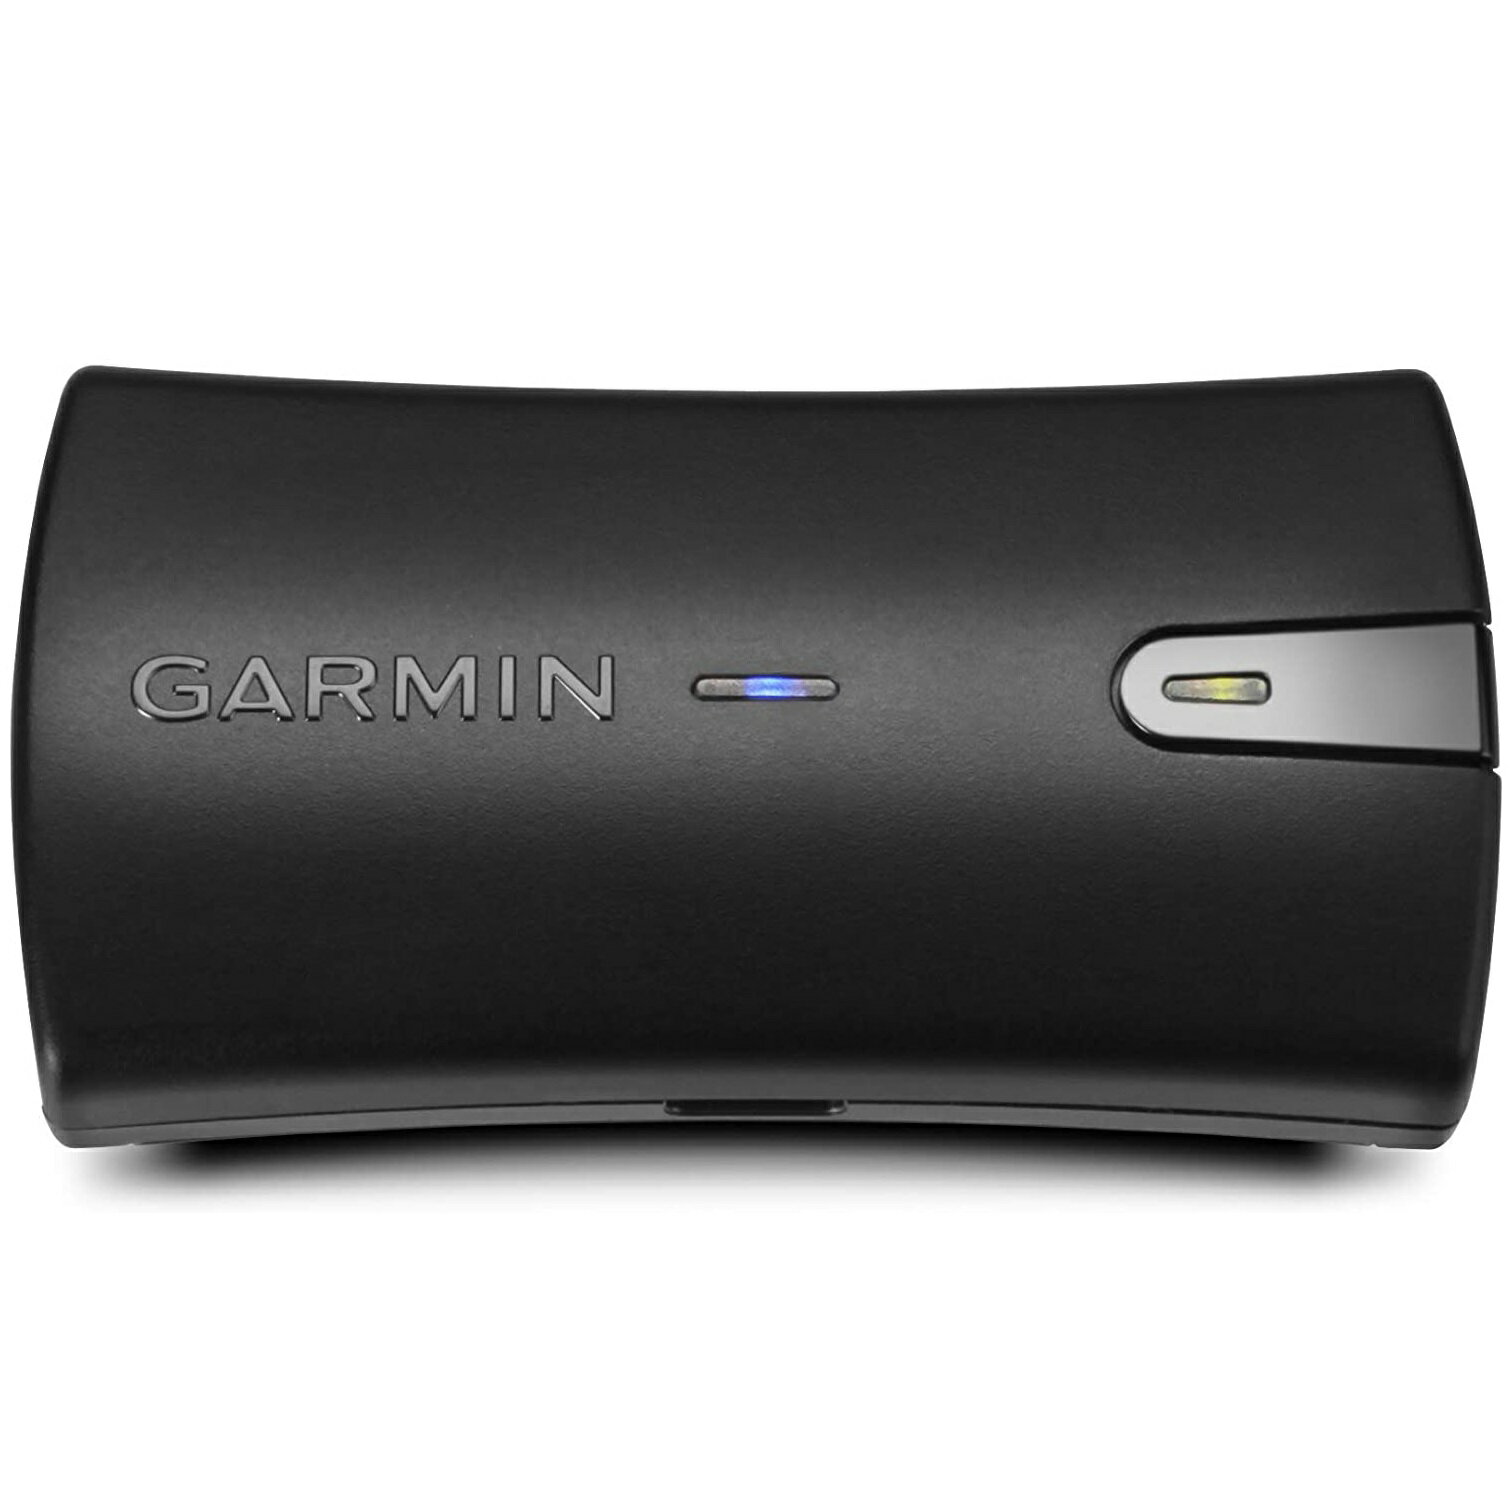 【 送料無料 】 ガーミン GARMIN GLO 2 GPSレシーバー 010-02184-01 Bluetooth ワイヤレス 対応 輸入品